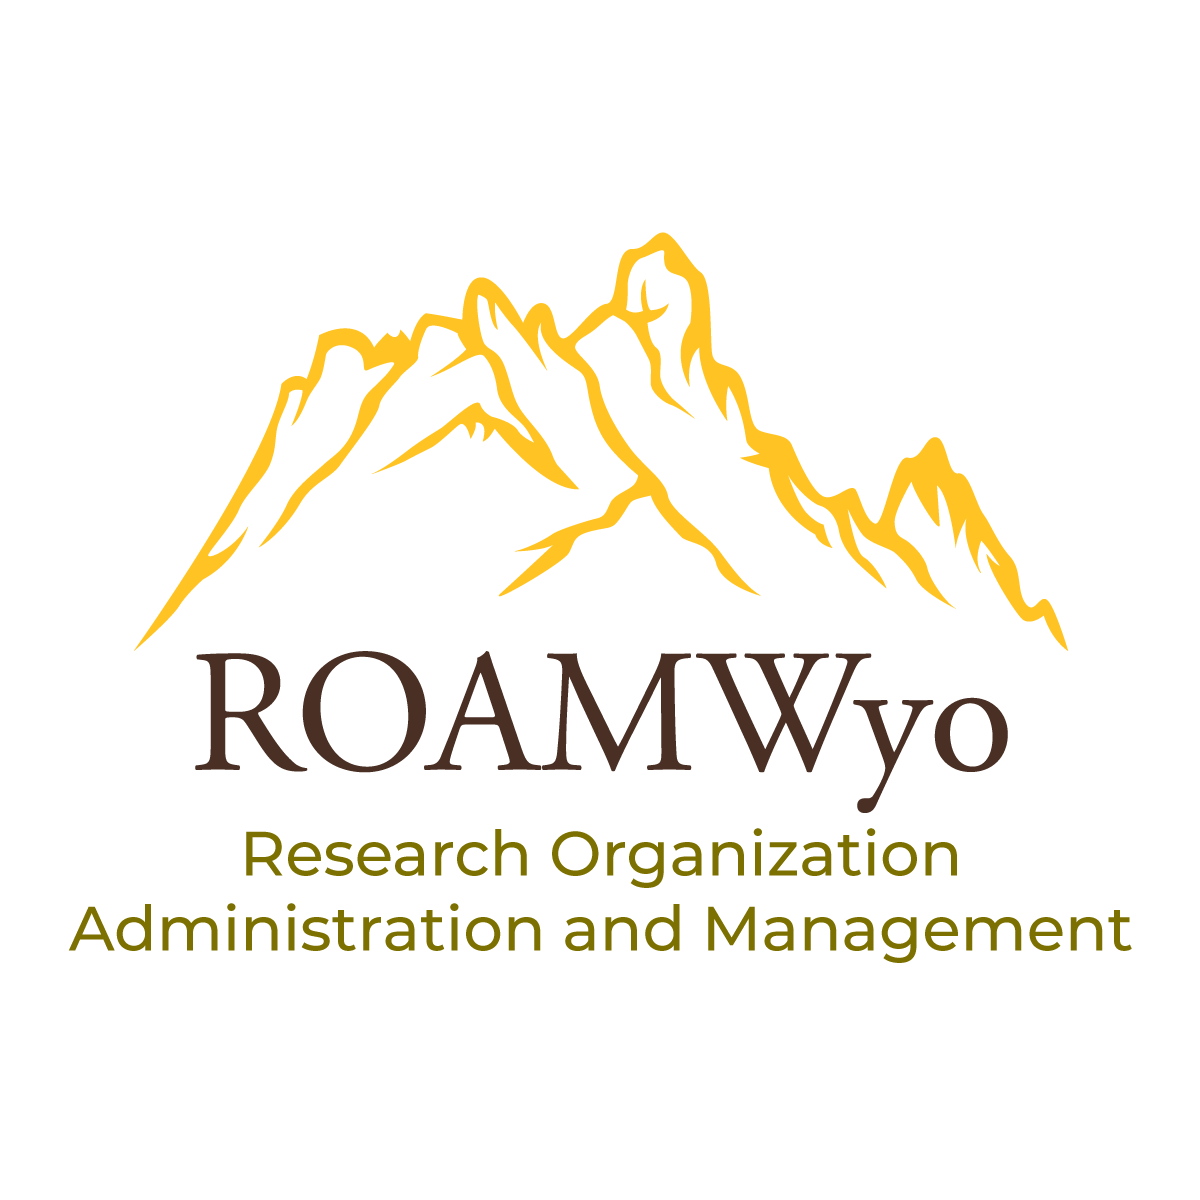 The ROAMWyo logo